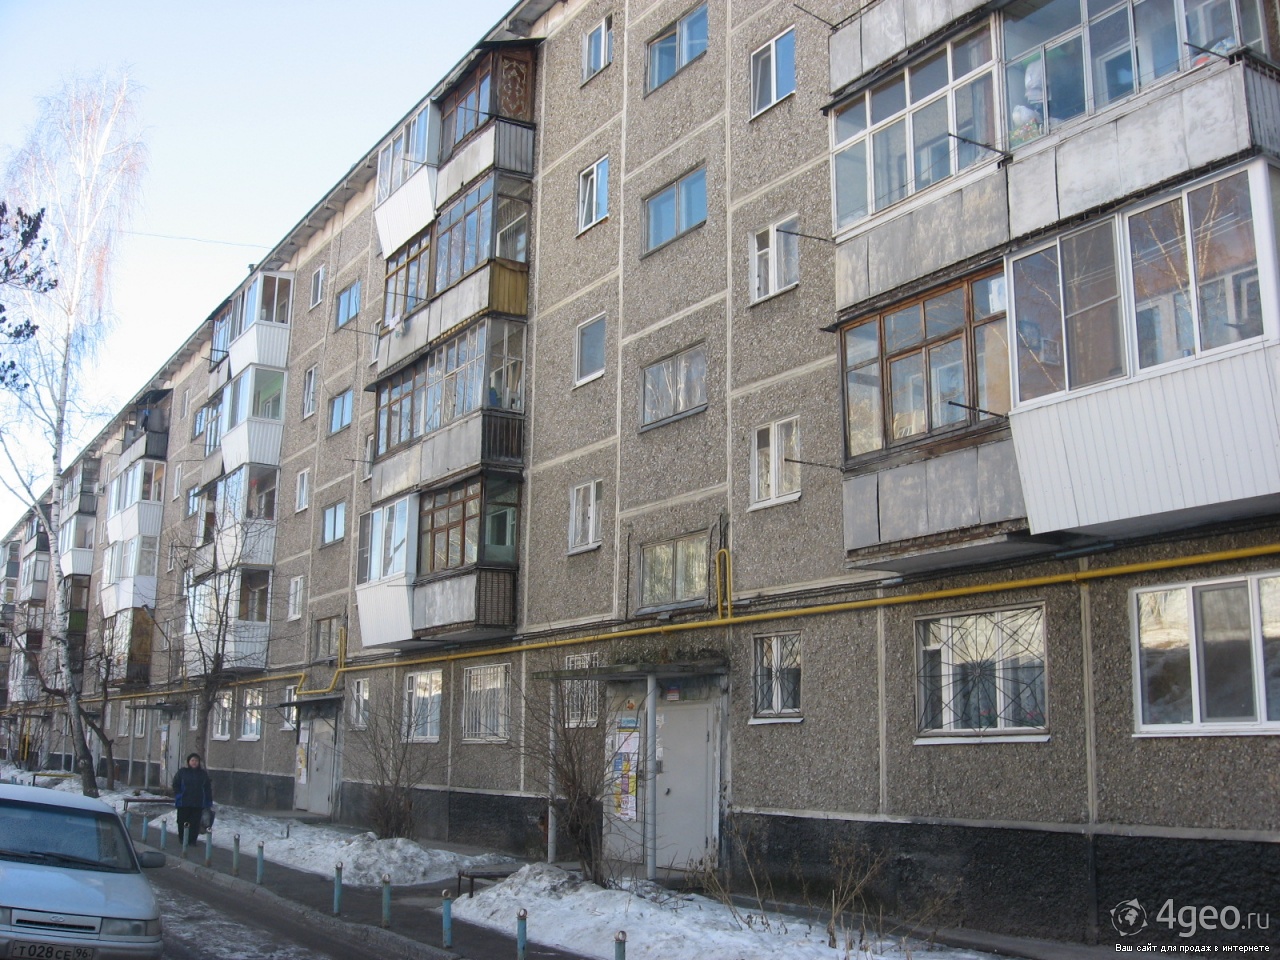 Е1 Недвижимость Екатеринбург Знакомства